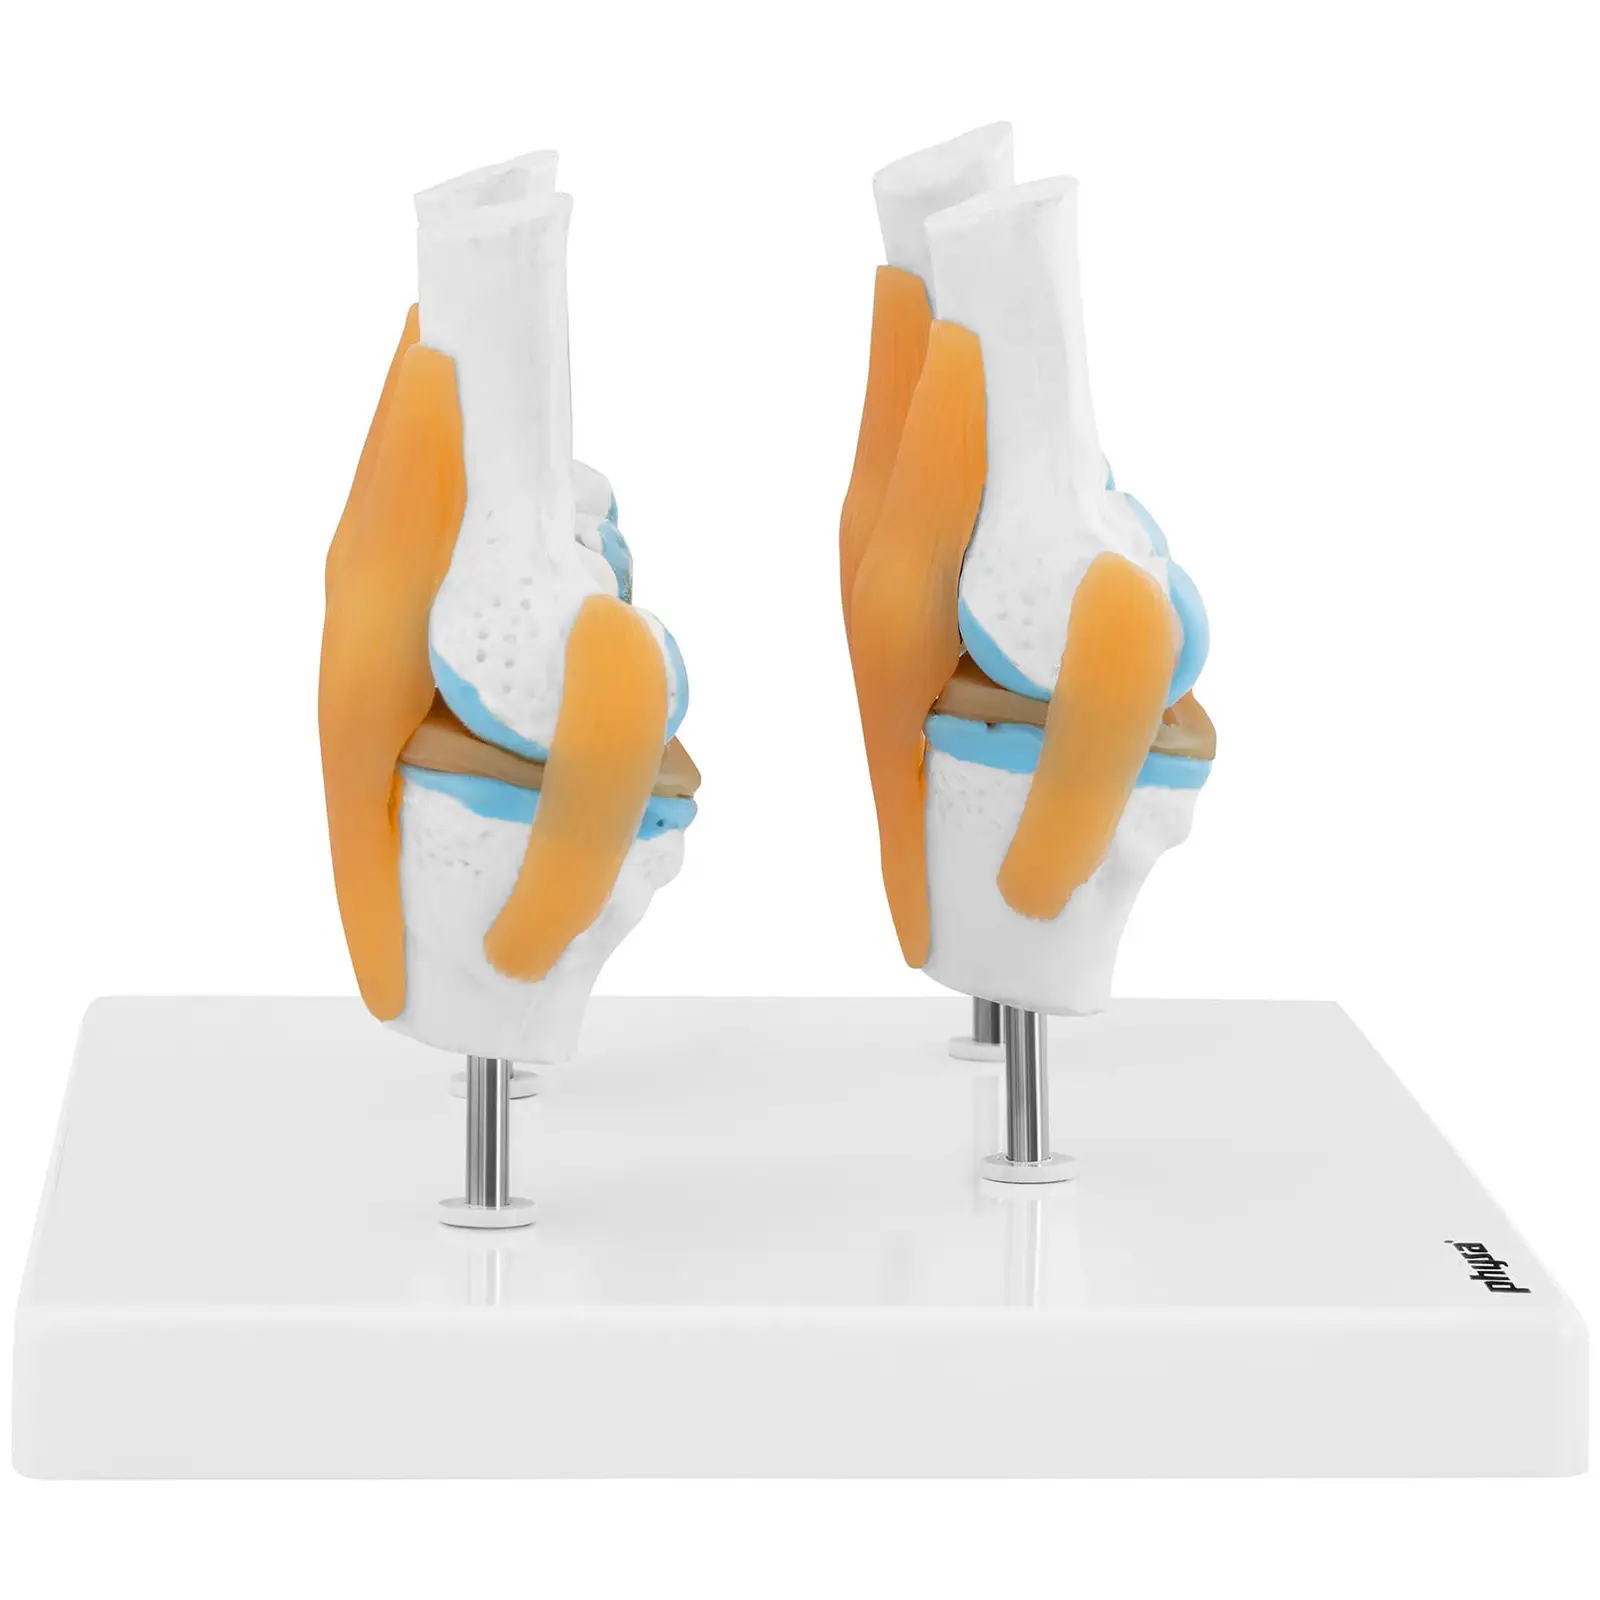 Maquette anatomique du genou humain - 4 stades d'arthrose - Échelle réduite